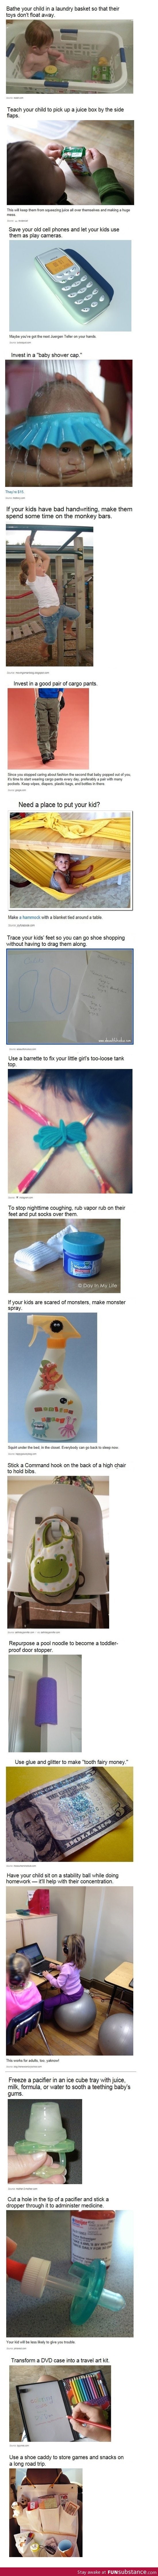 Some brilliant parenting tips!